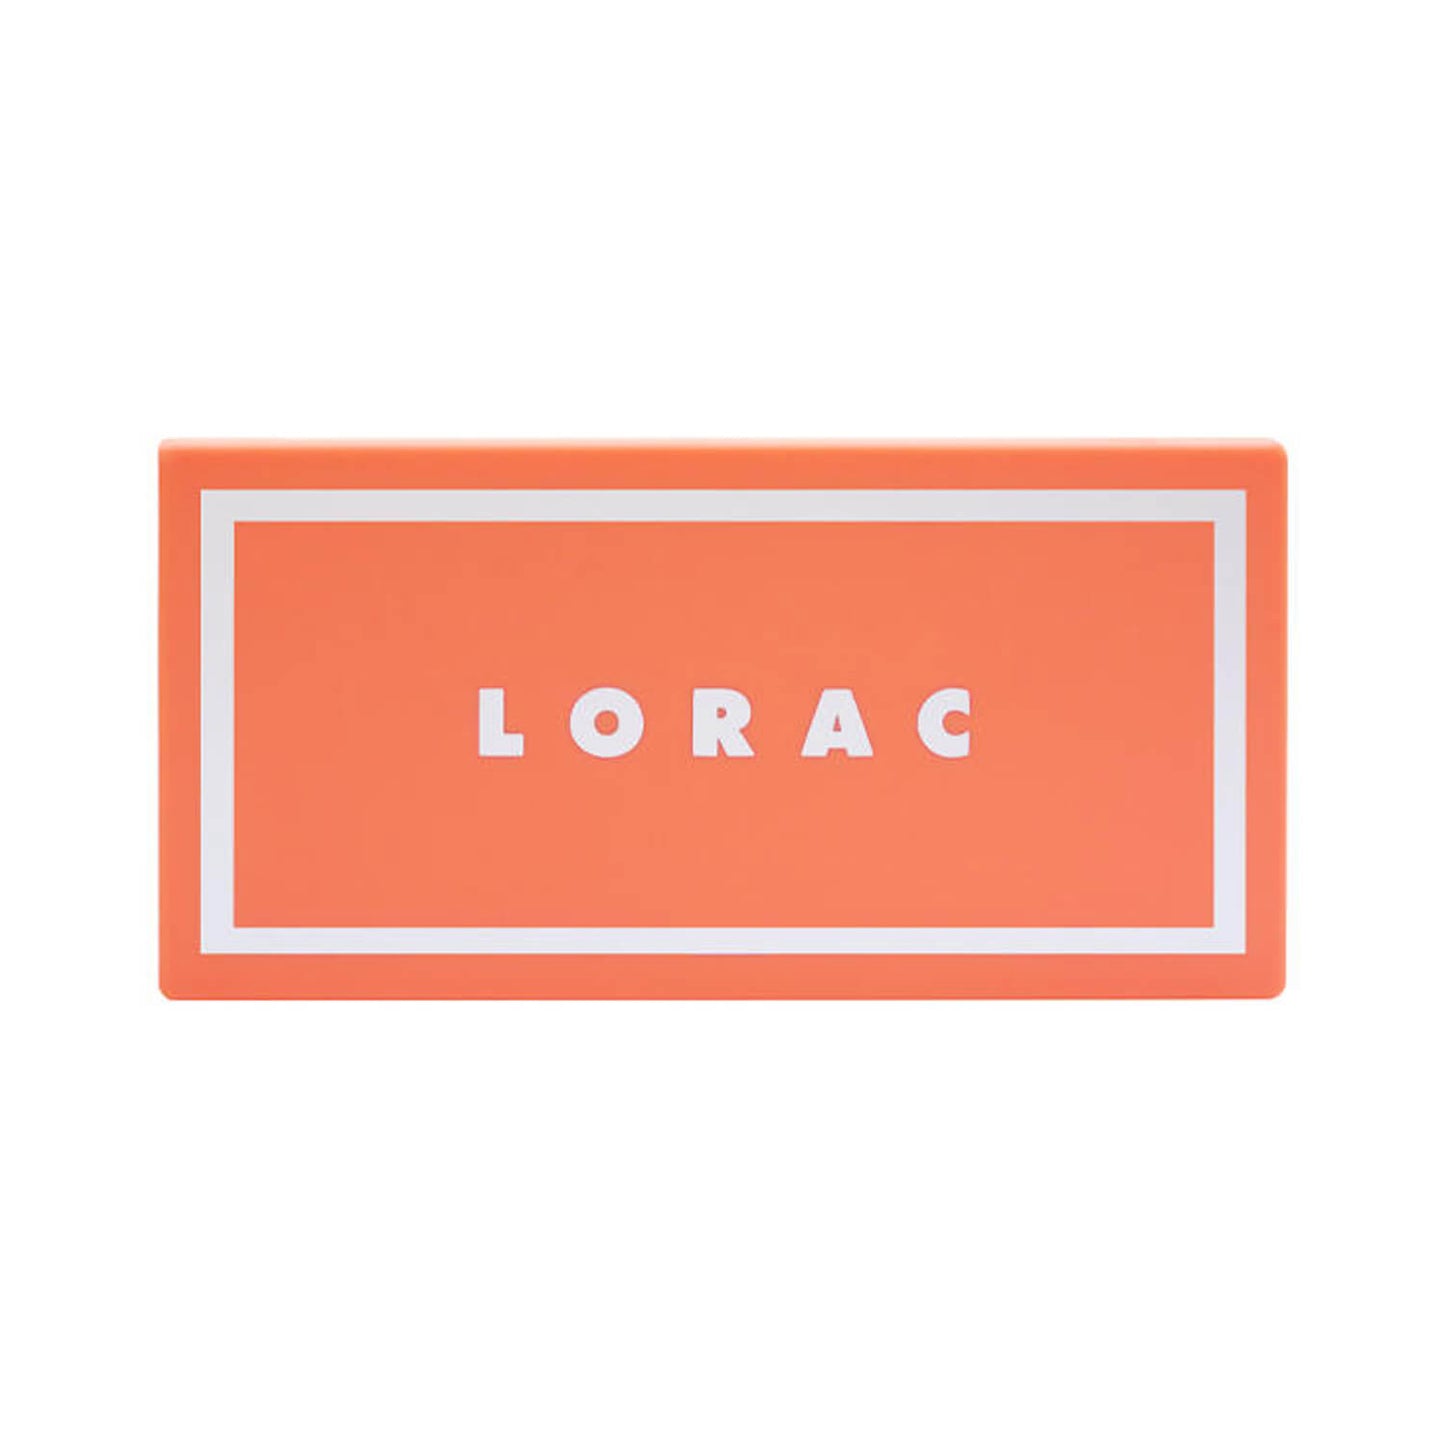 Lorac Alter Ego Dream Girl Palette Closed